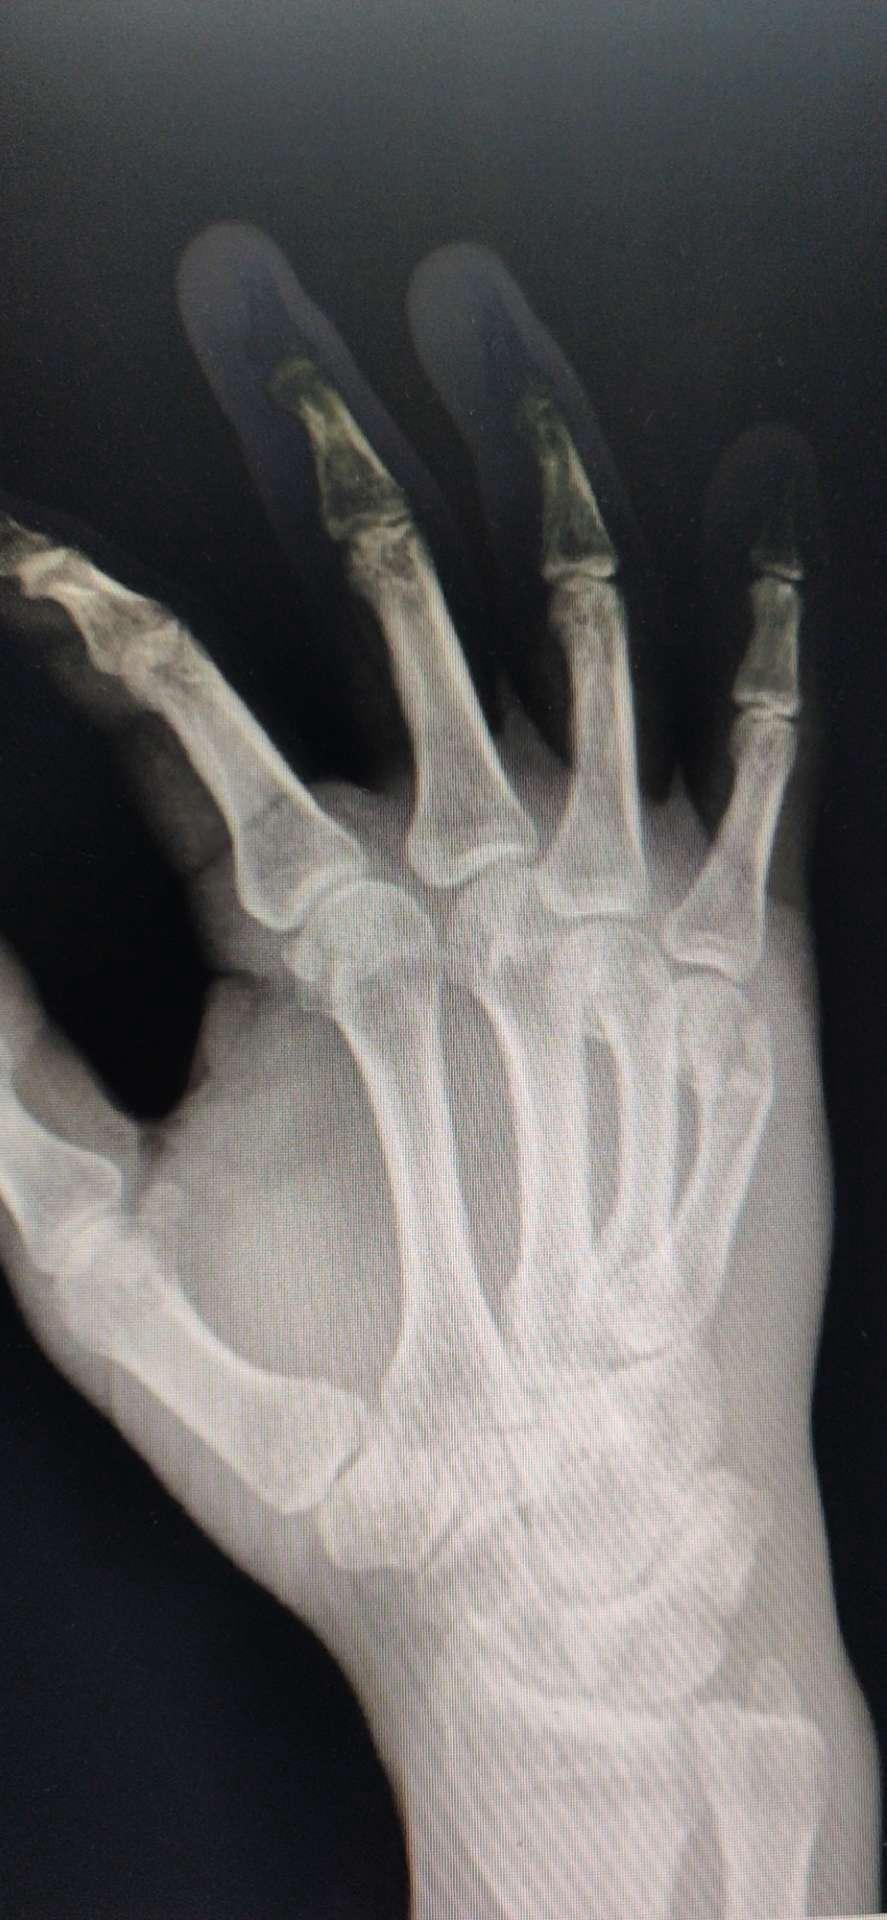 一例右手第5掌骨粉碎性骨折切开复位术及异体骨植骨术治疗分享 病例中心 诊疗助手 爱爱医医学网